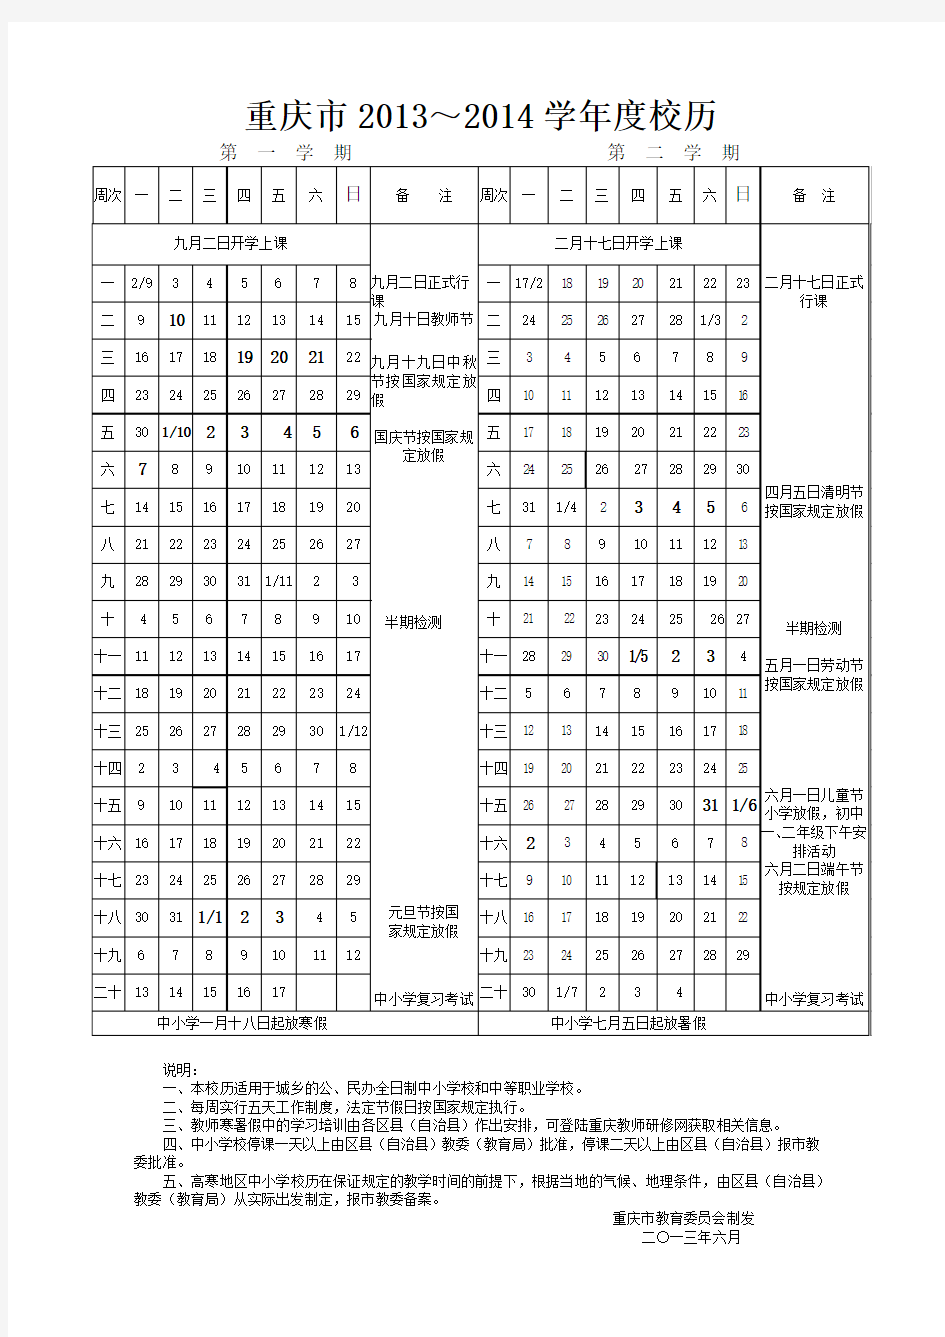 重庆市2013-2014学年度校历